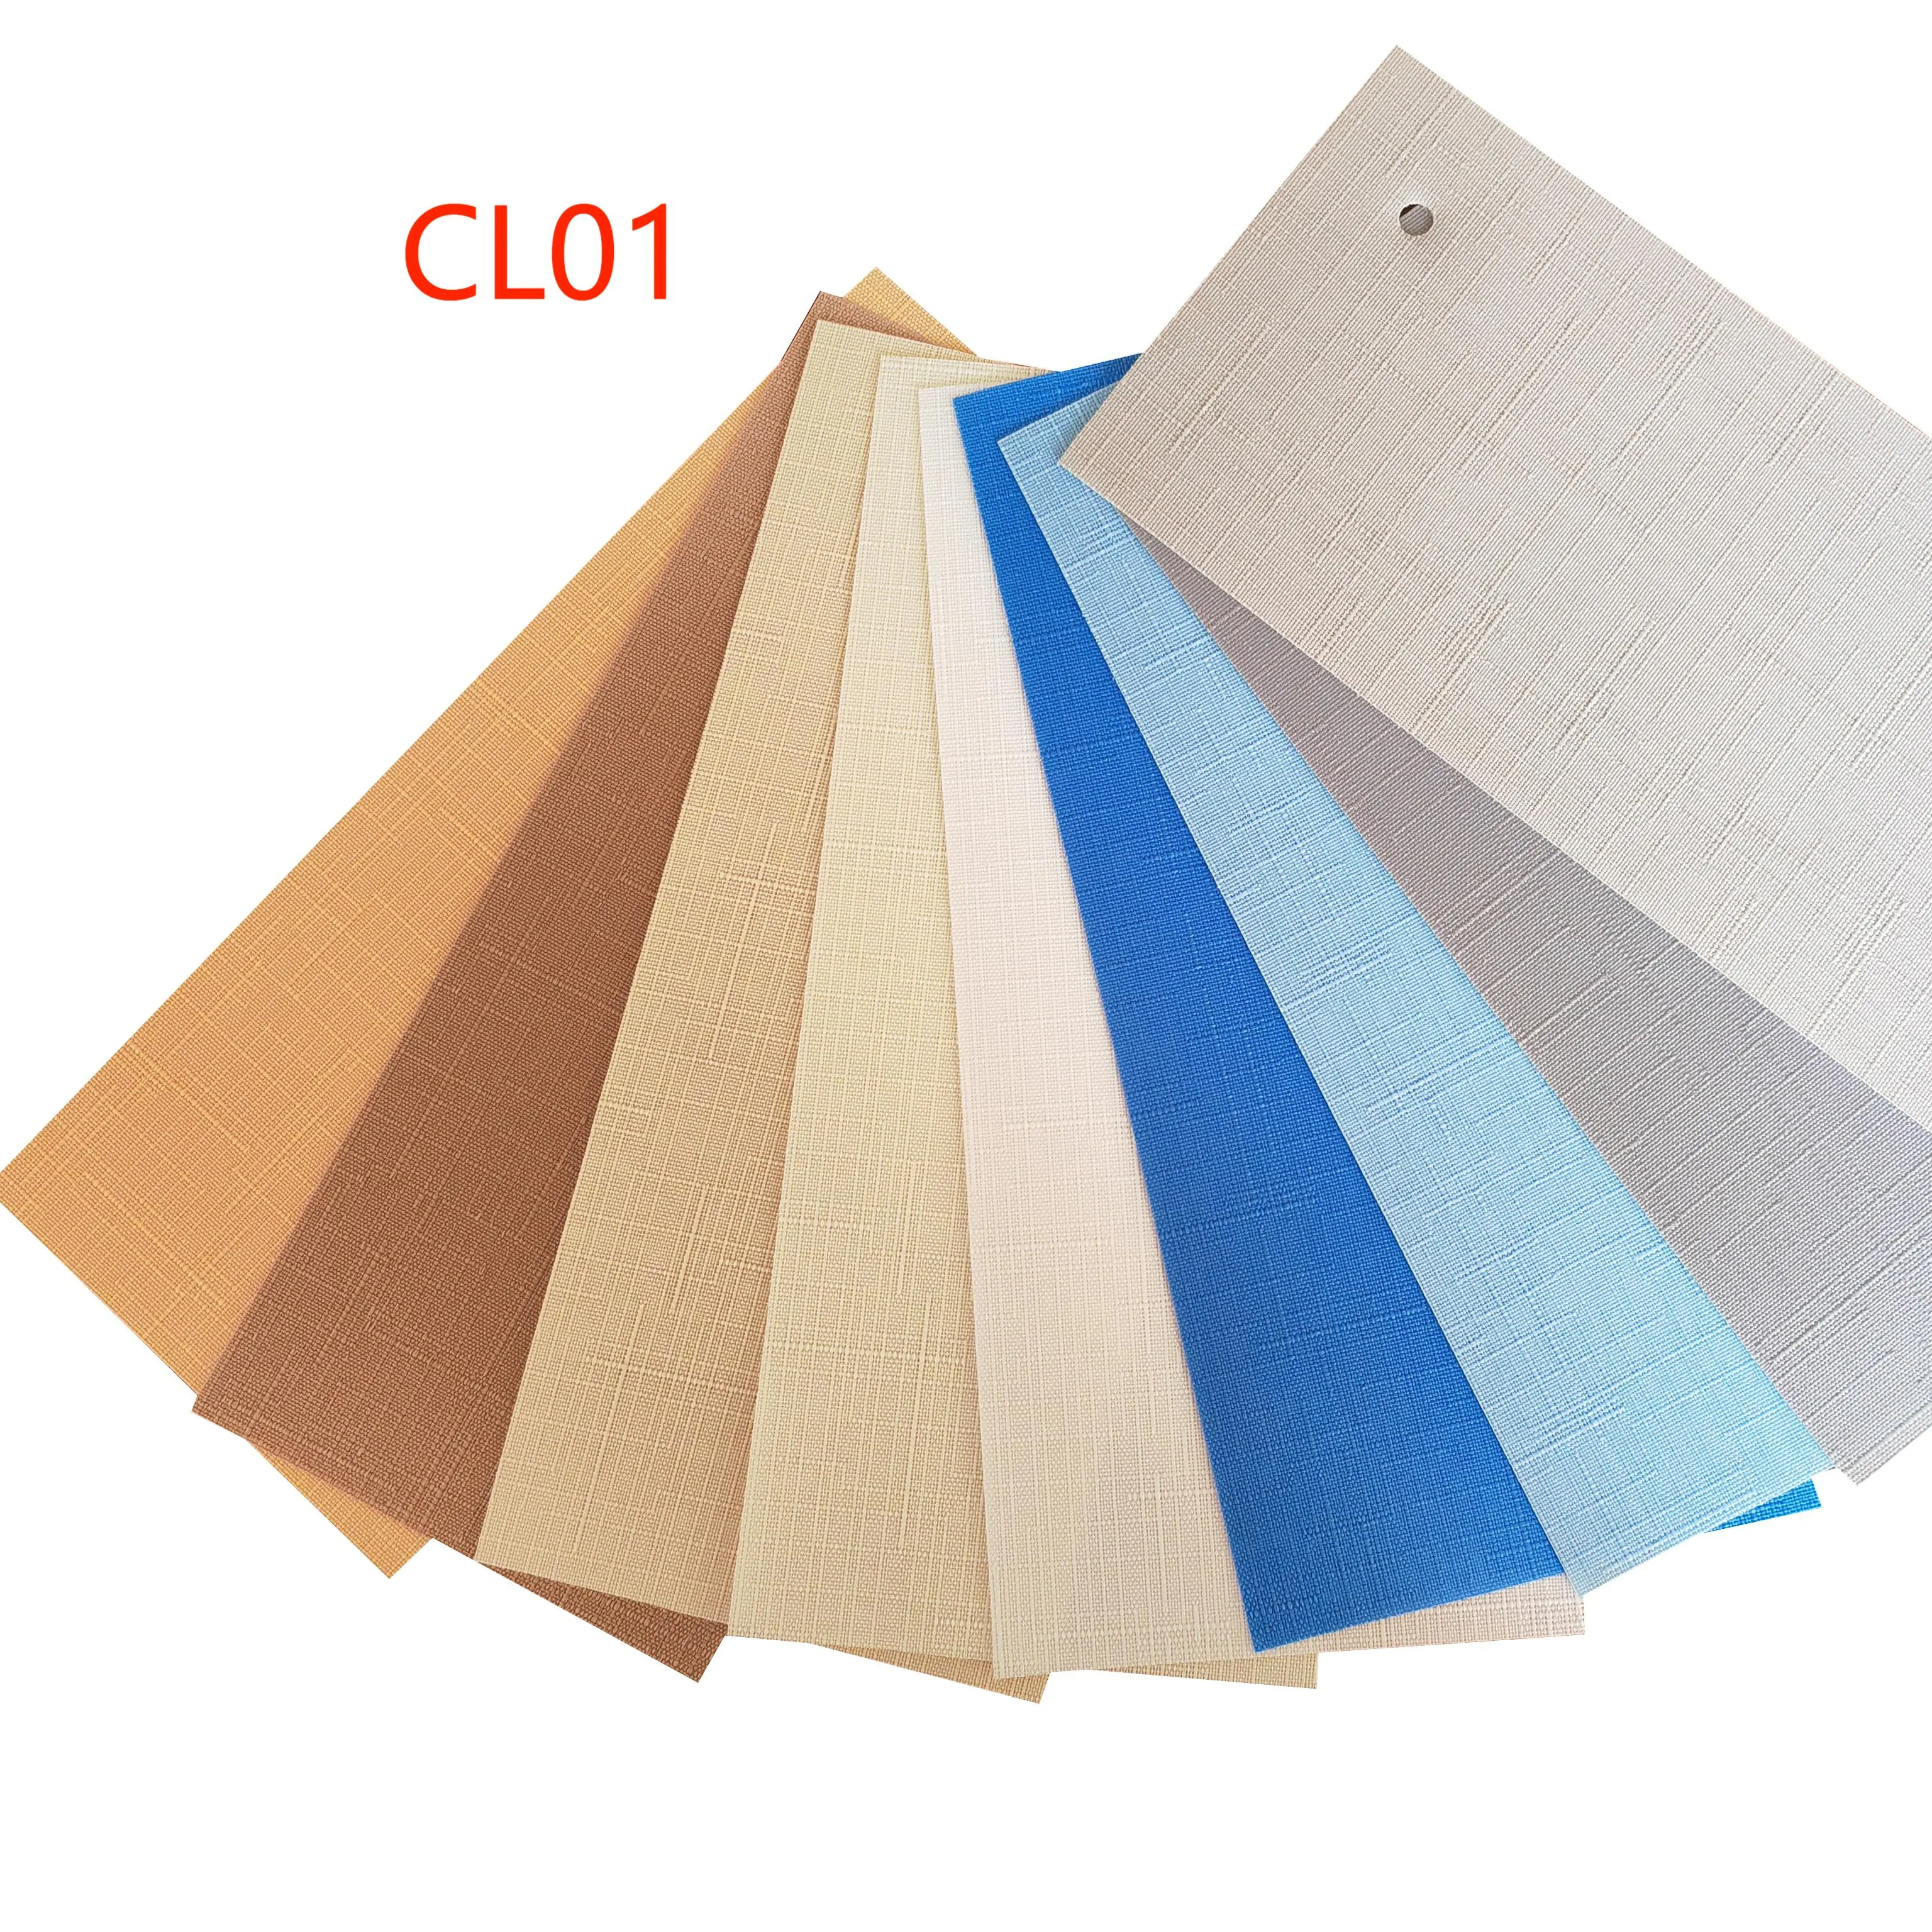 Tende verticali in tessuto da 89MM serie CL01 con tenda per finestra verticale a rullo oscurante in tessuto traslucido di molti colori